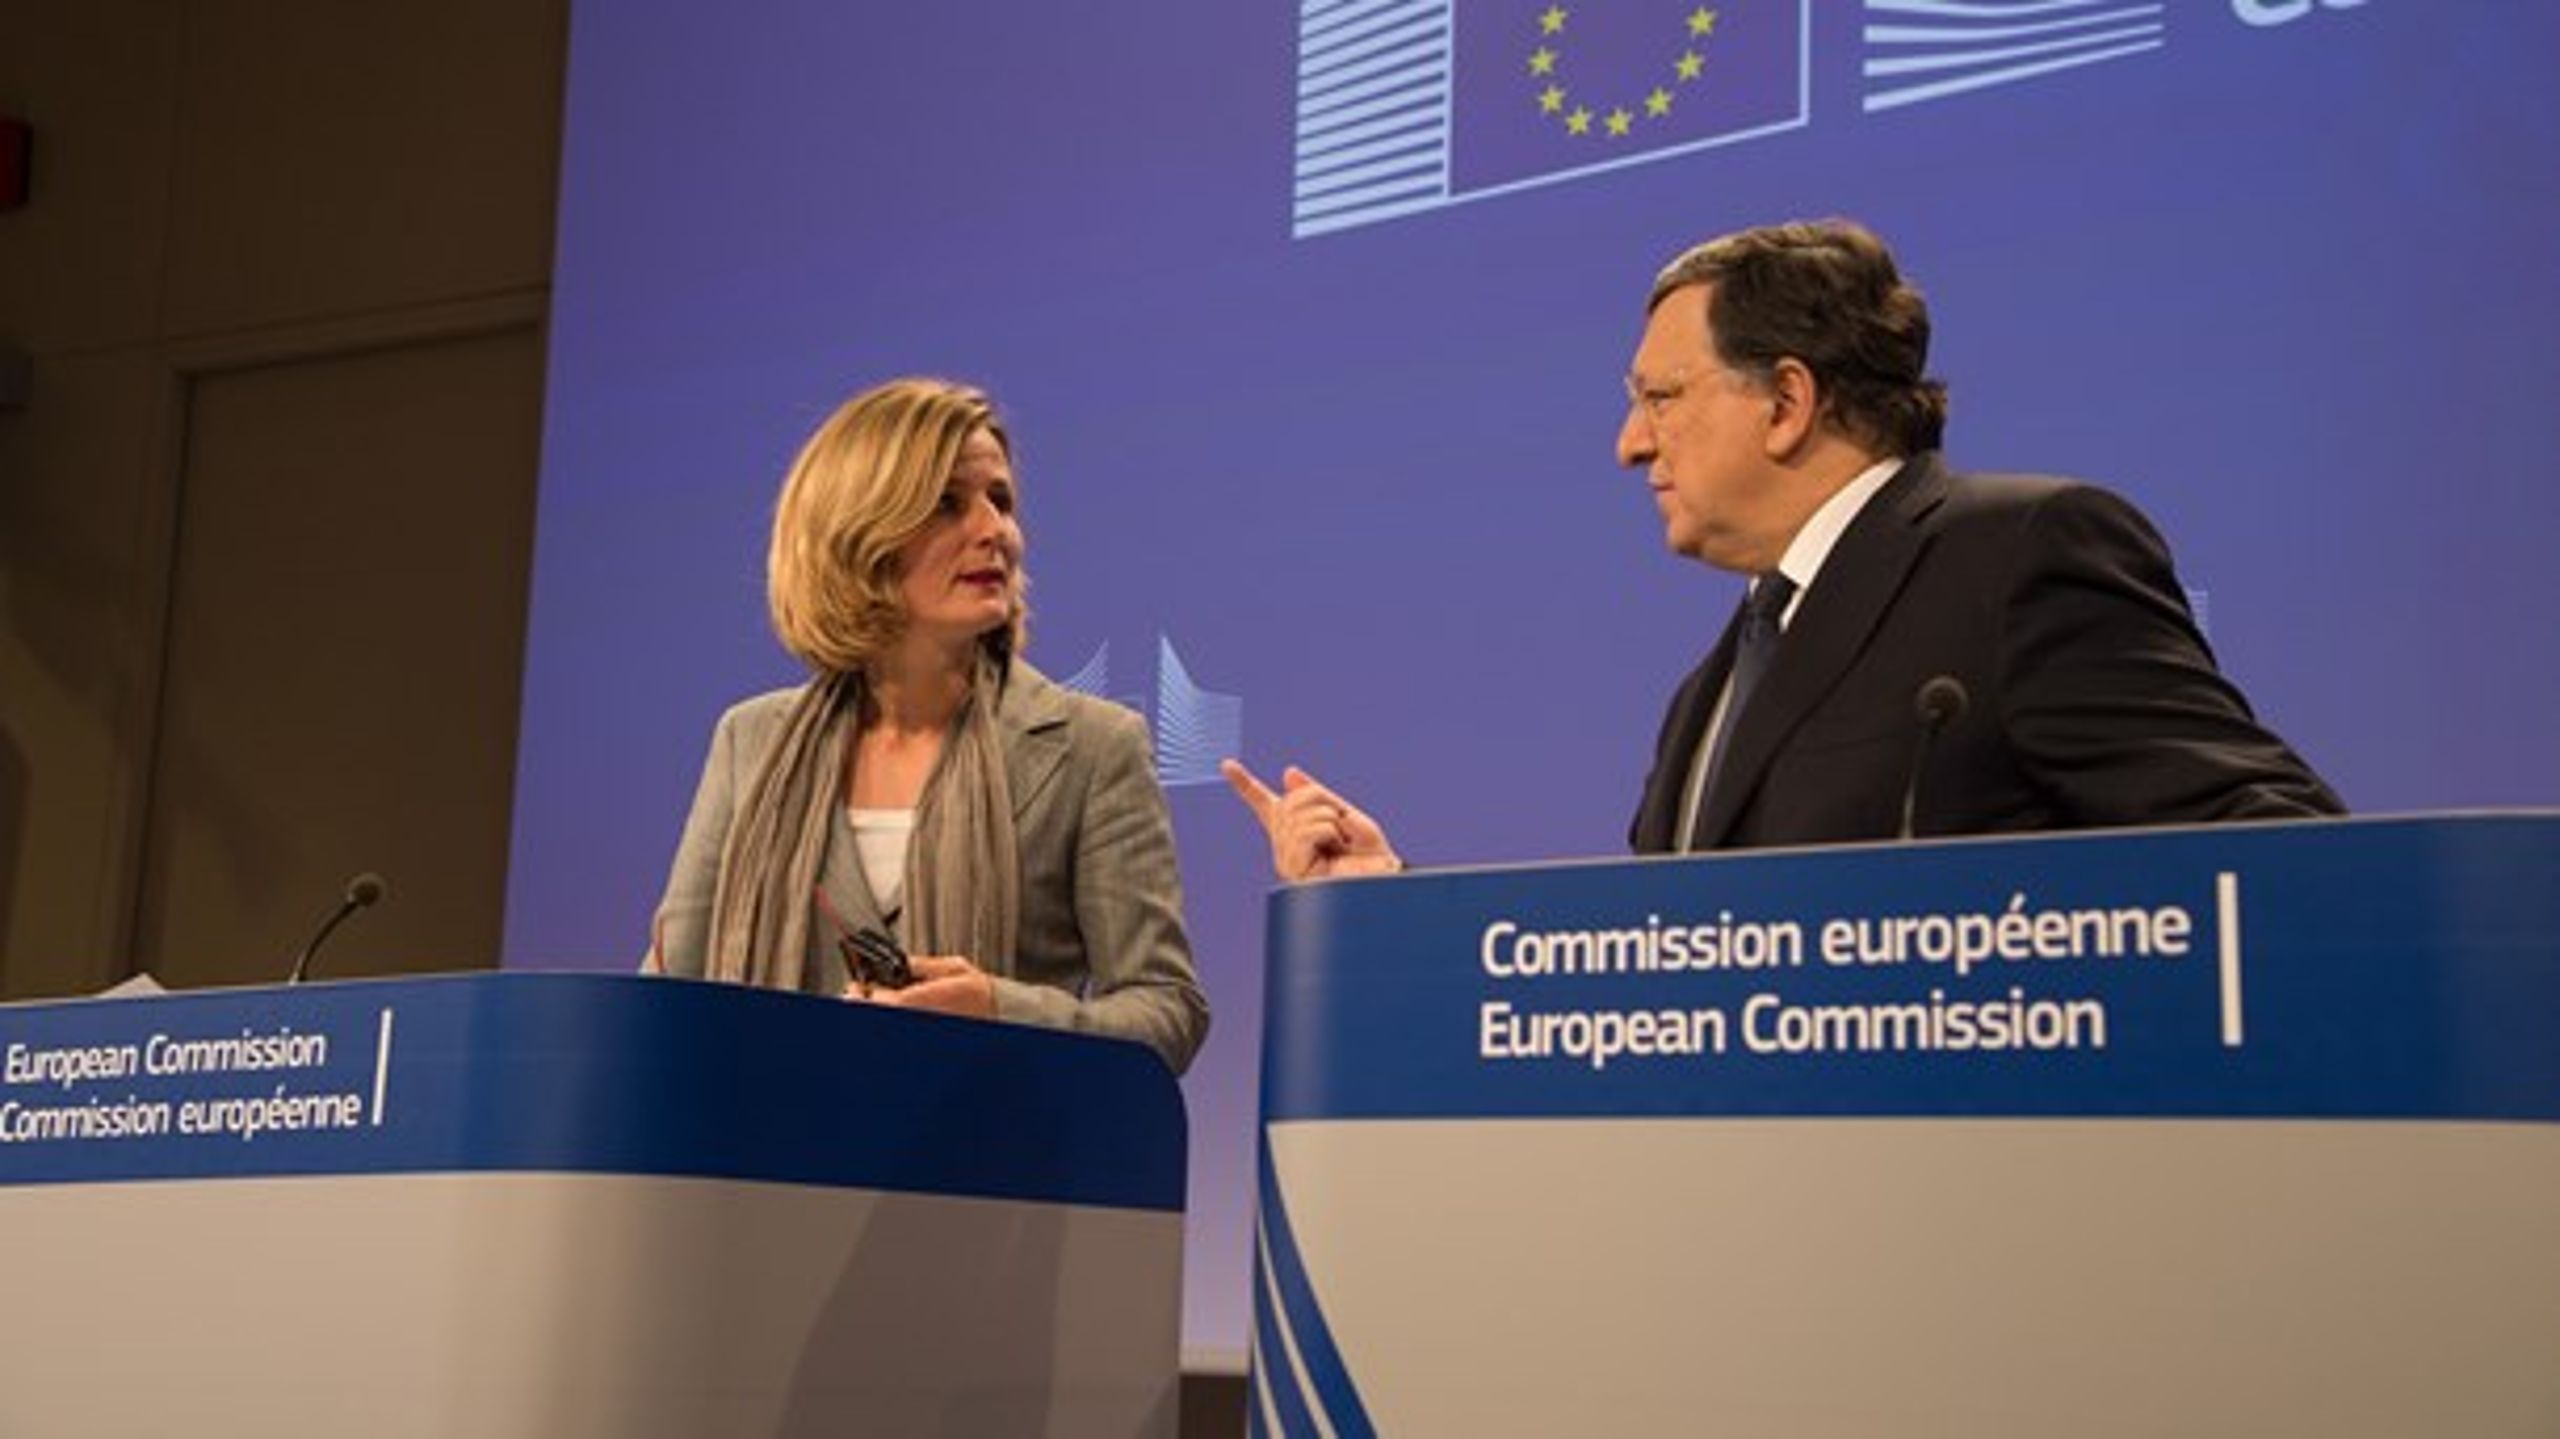 Pia Ahrenkilde har længe arbejdet i EU-systemet og får nu&nbsp;en toppost. Her ses hun med tidligere formand for EU-Kommissionen Manuel Barroso.